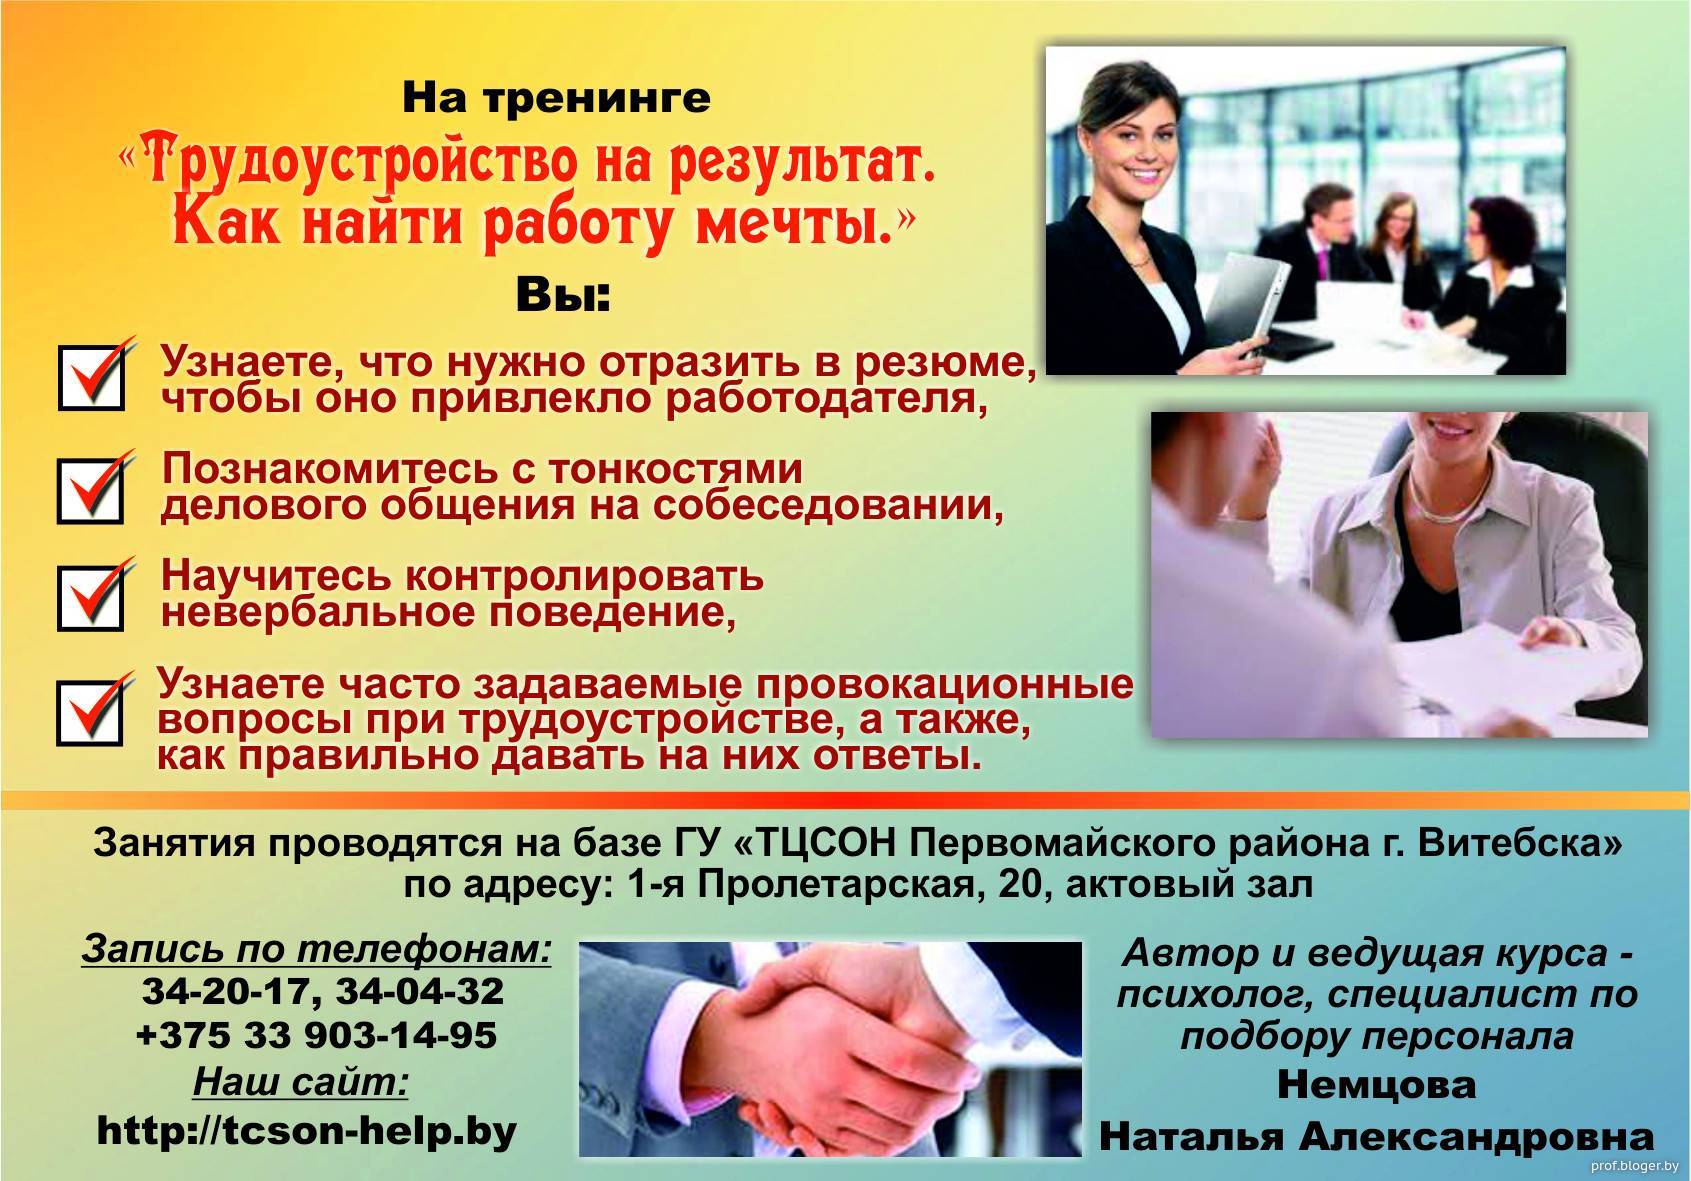 Работа в ирландии для русских украинцев белорусов: как найти вакансию порядок трудоустройства востребованные профессии получение разрешения визы